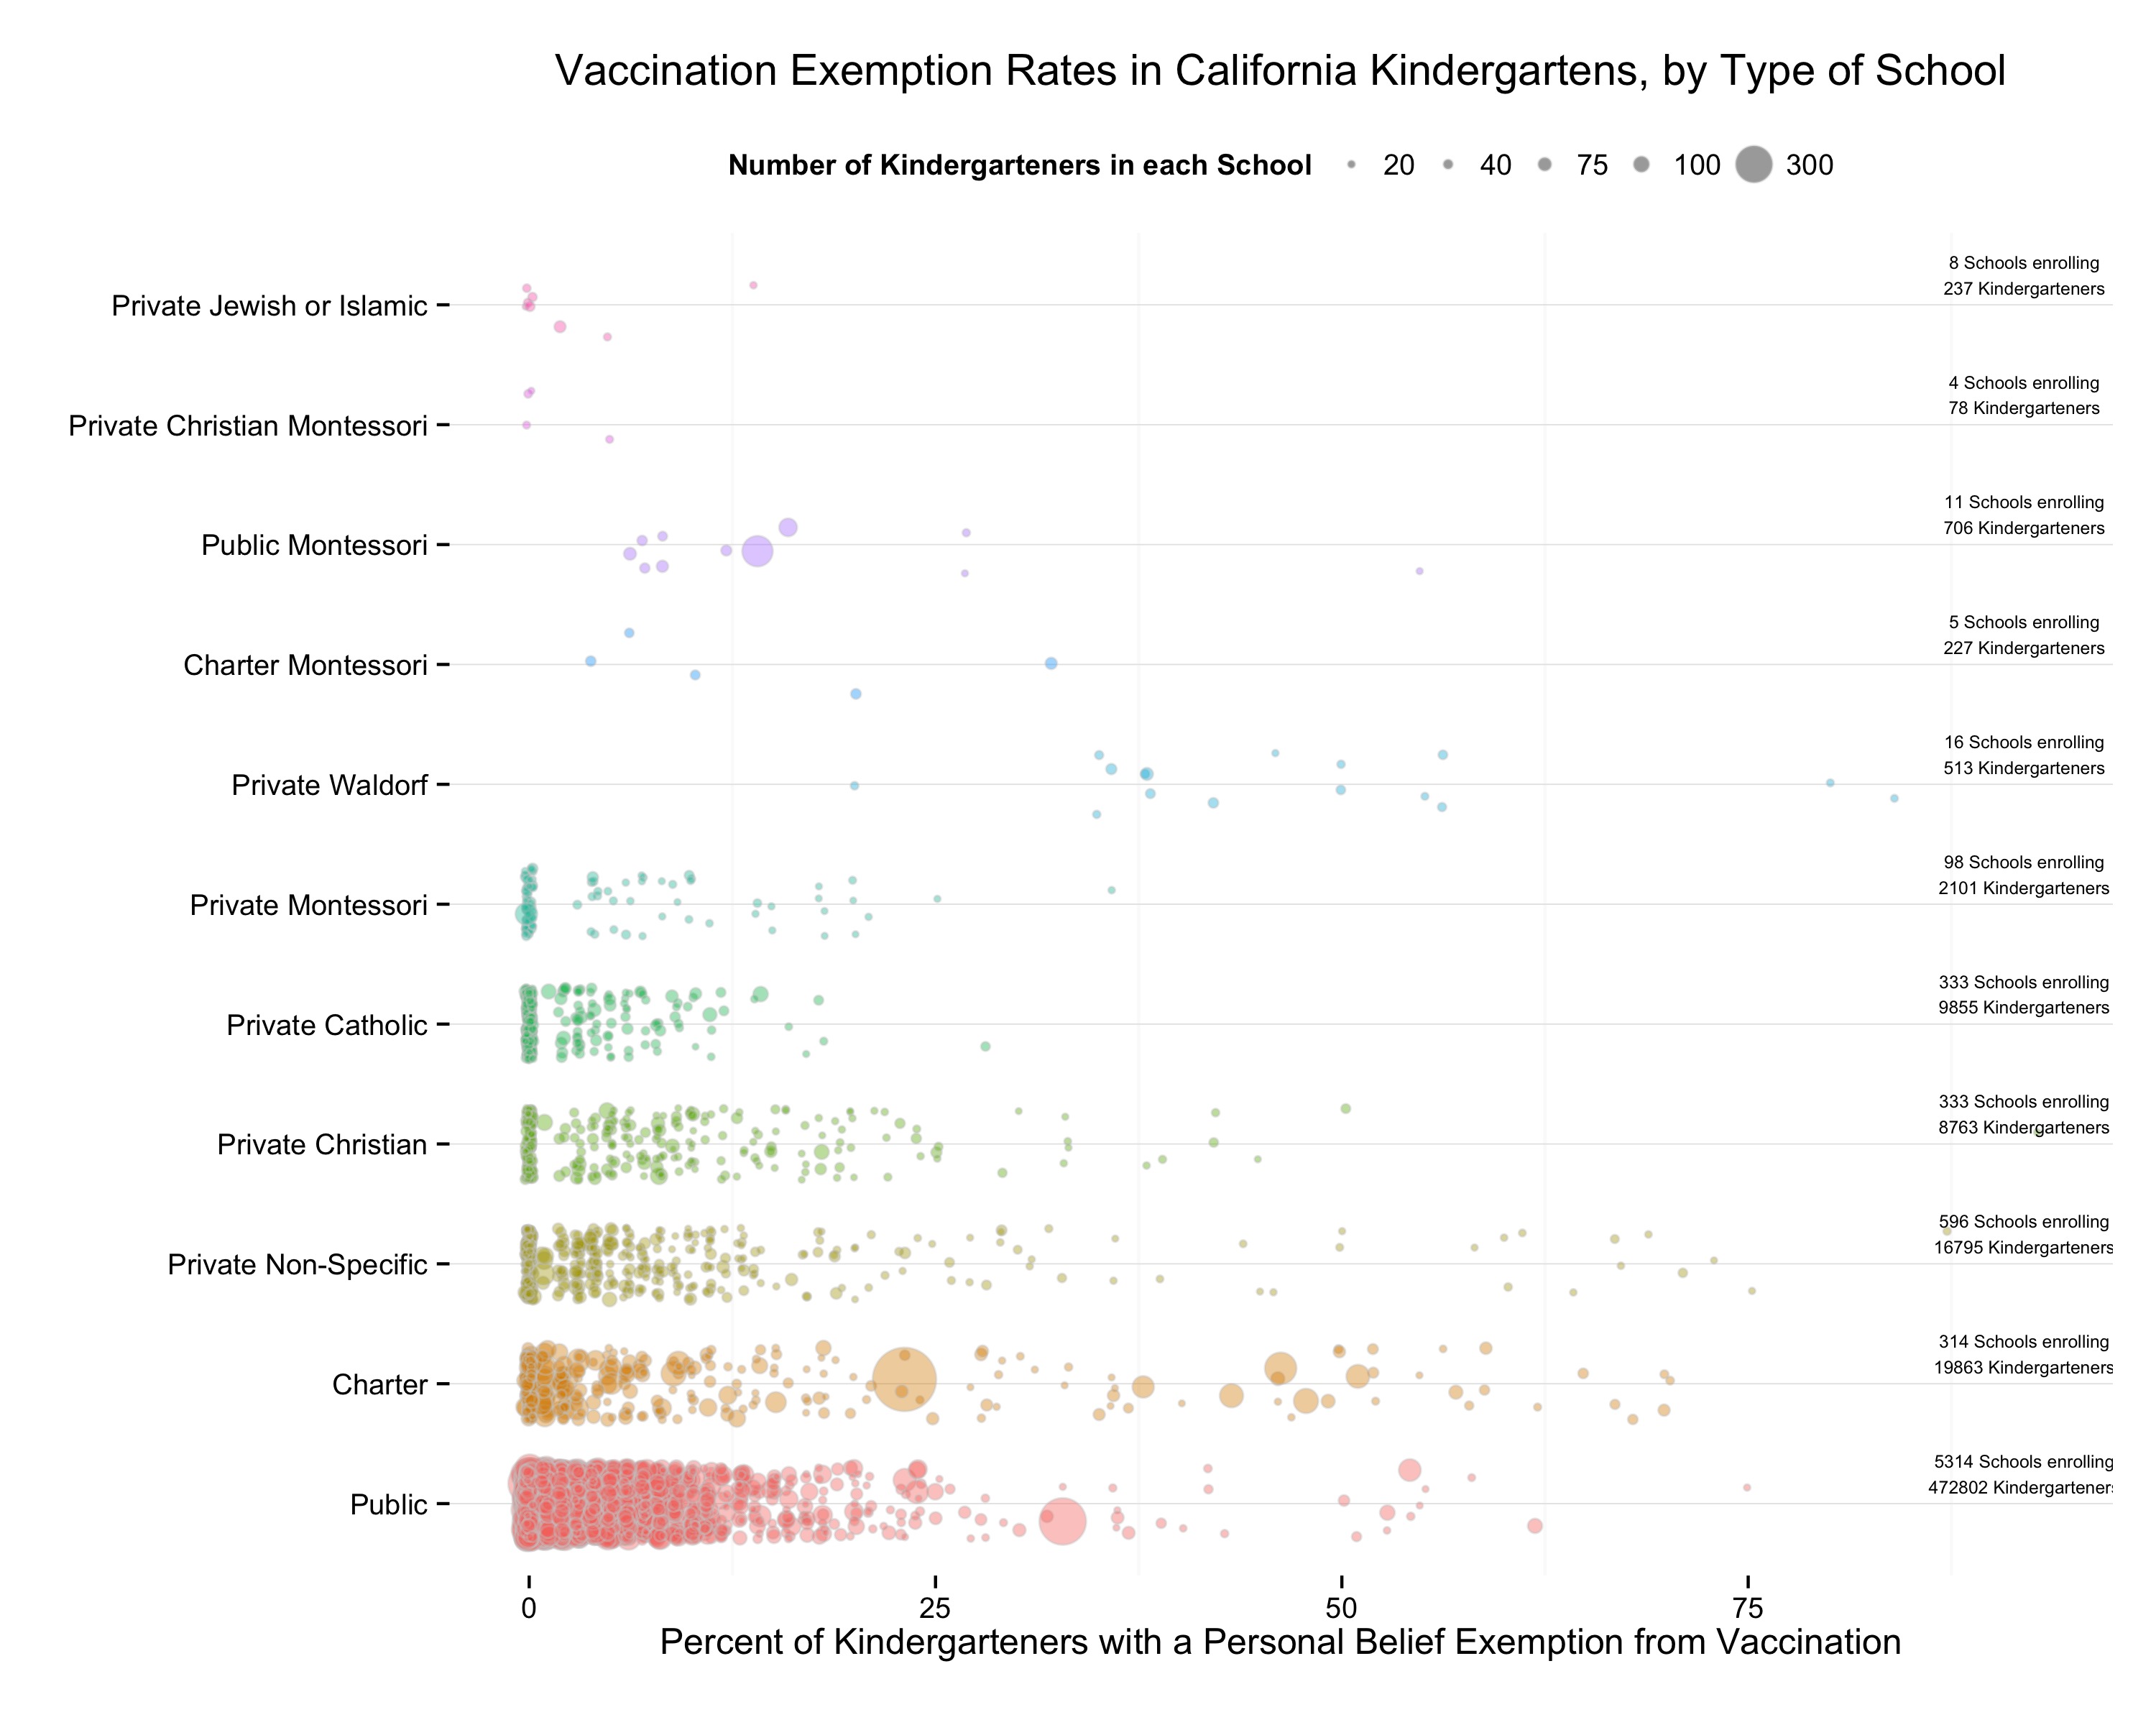 California Kindergarten PBE Rates by Type of School, 2014-2015